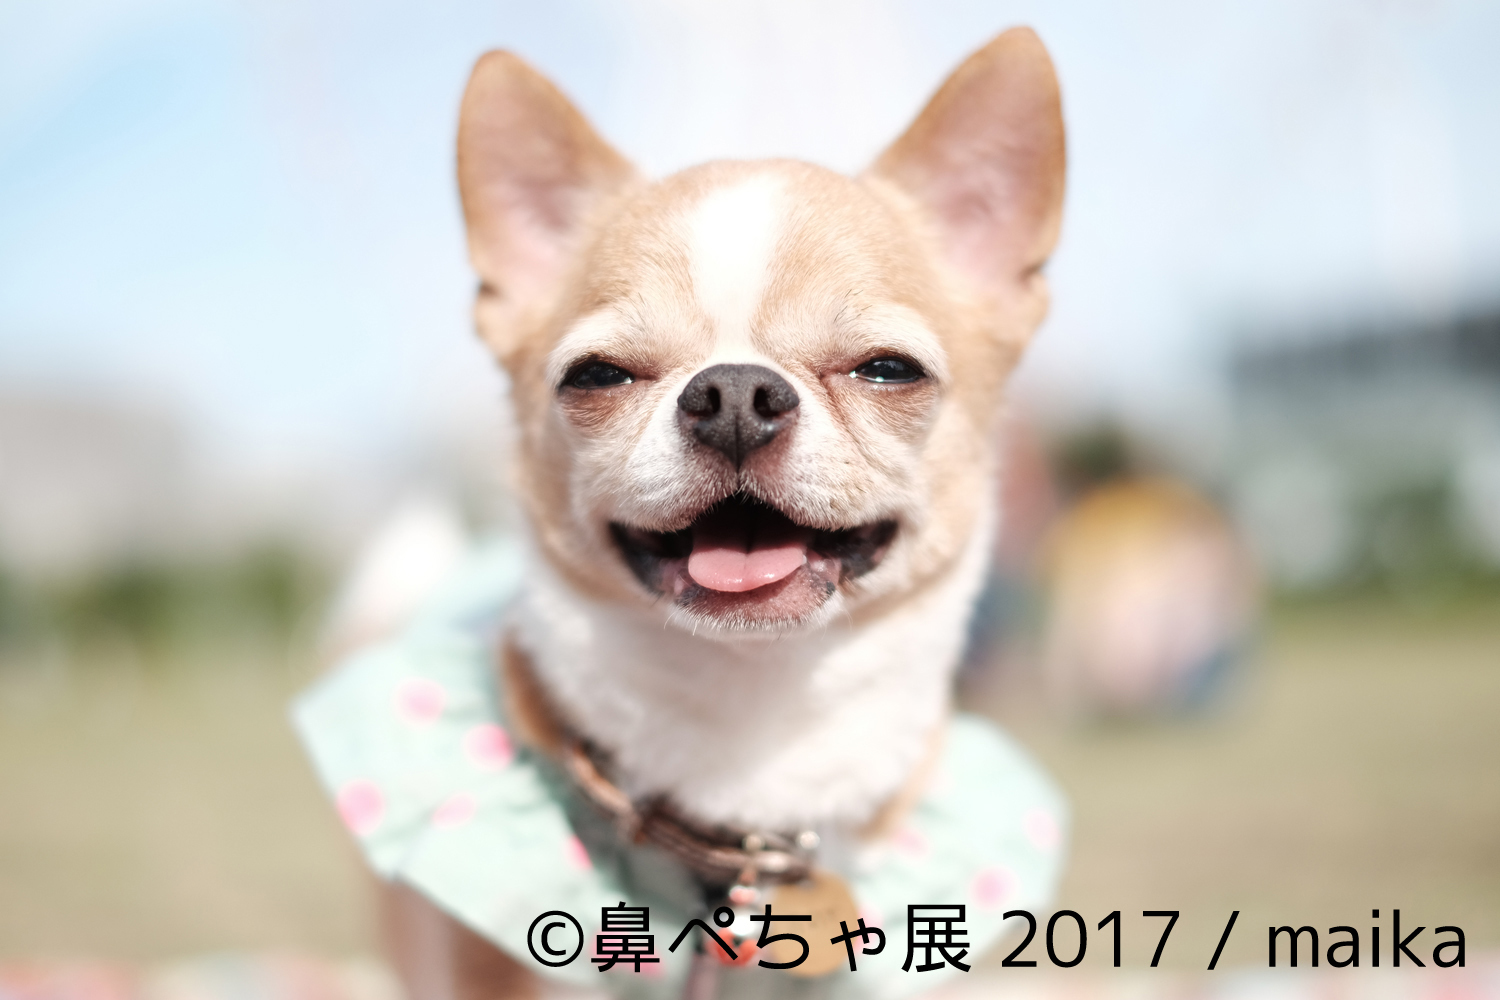 『鼻ぺちゃ展 2017』